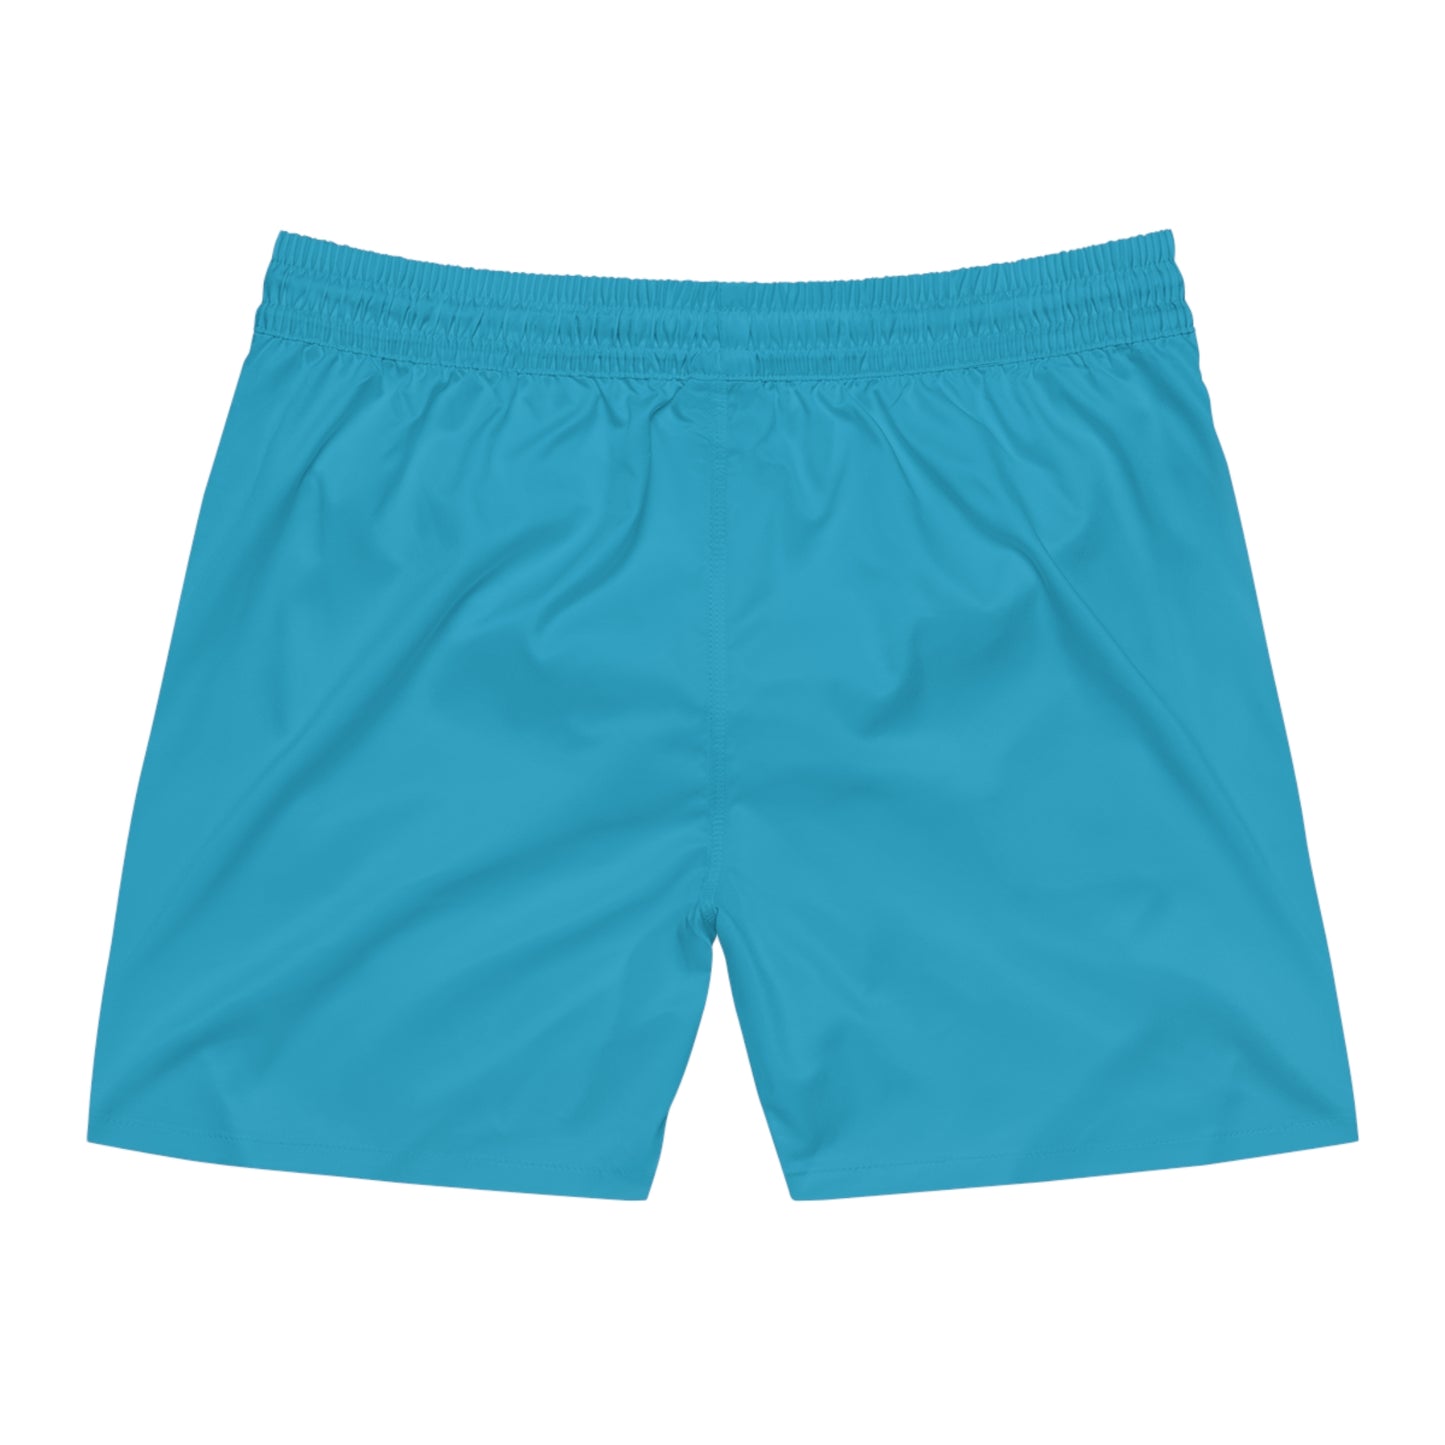 UCLA Shorts